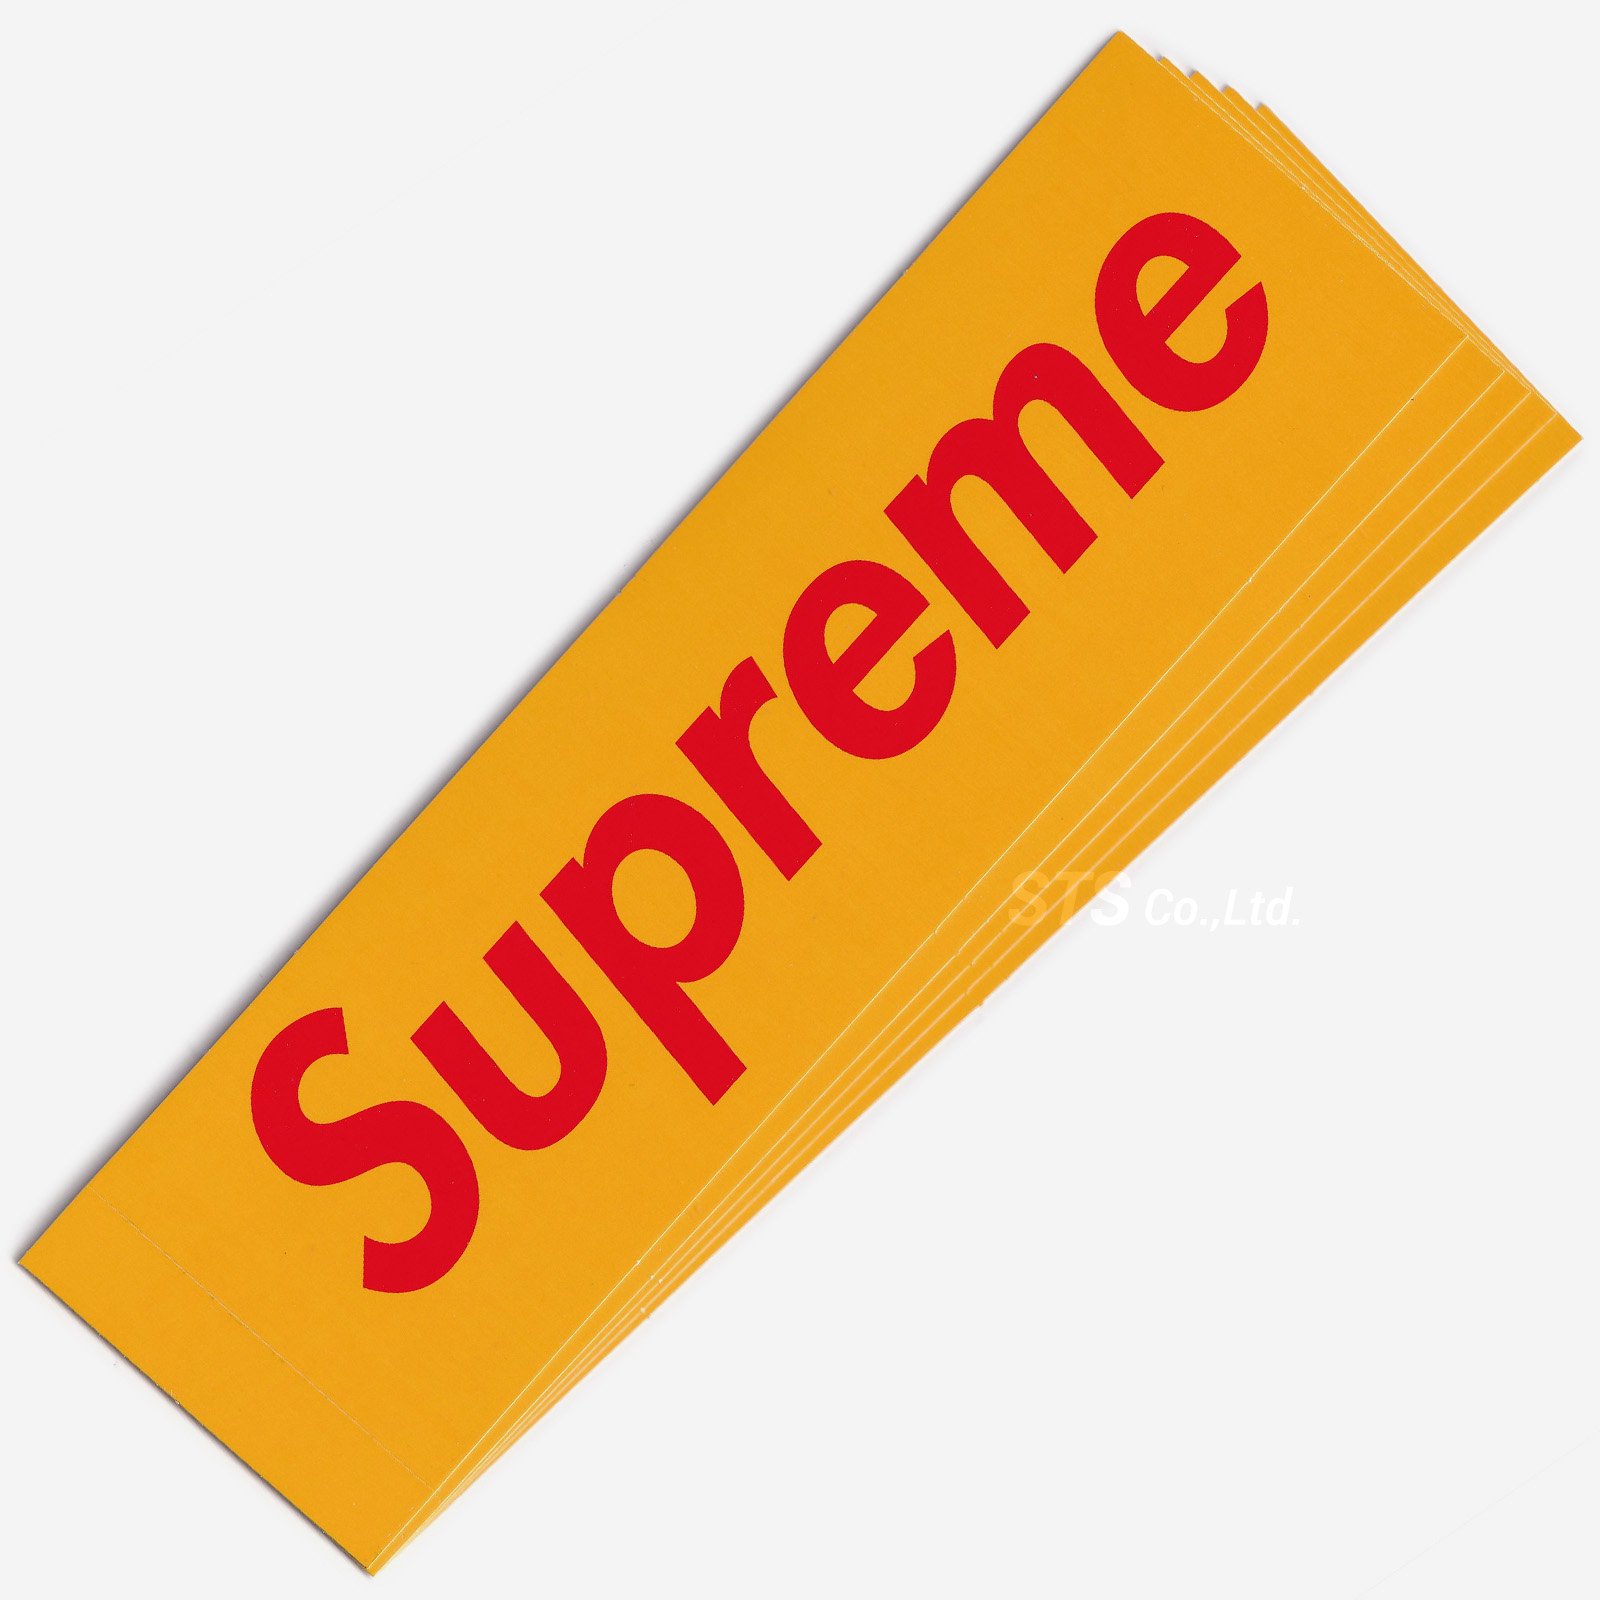 Sticker Supreme小物